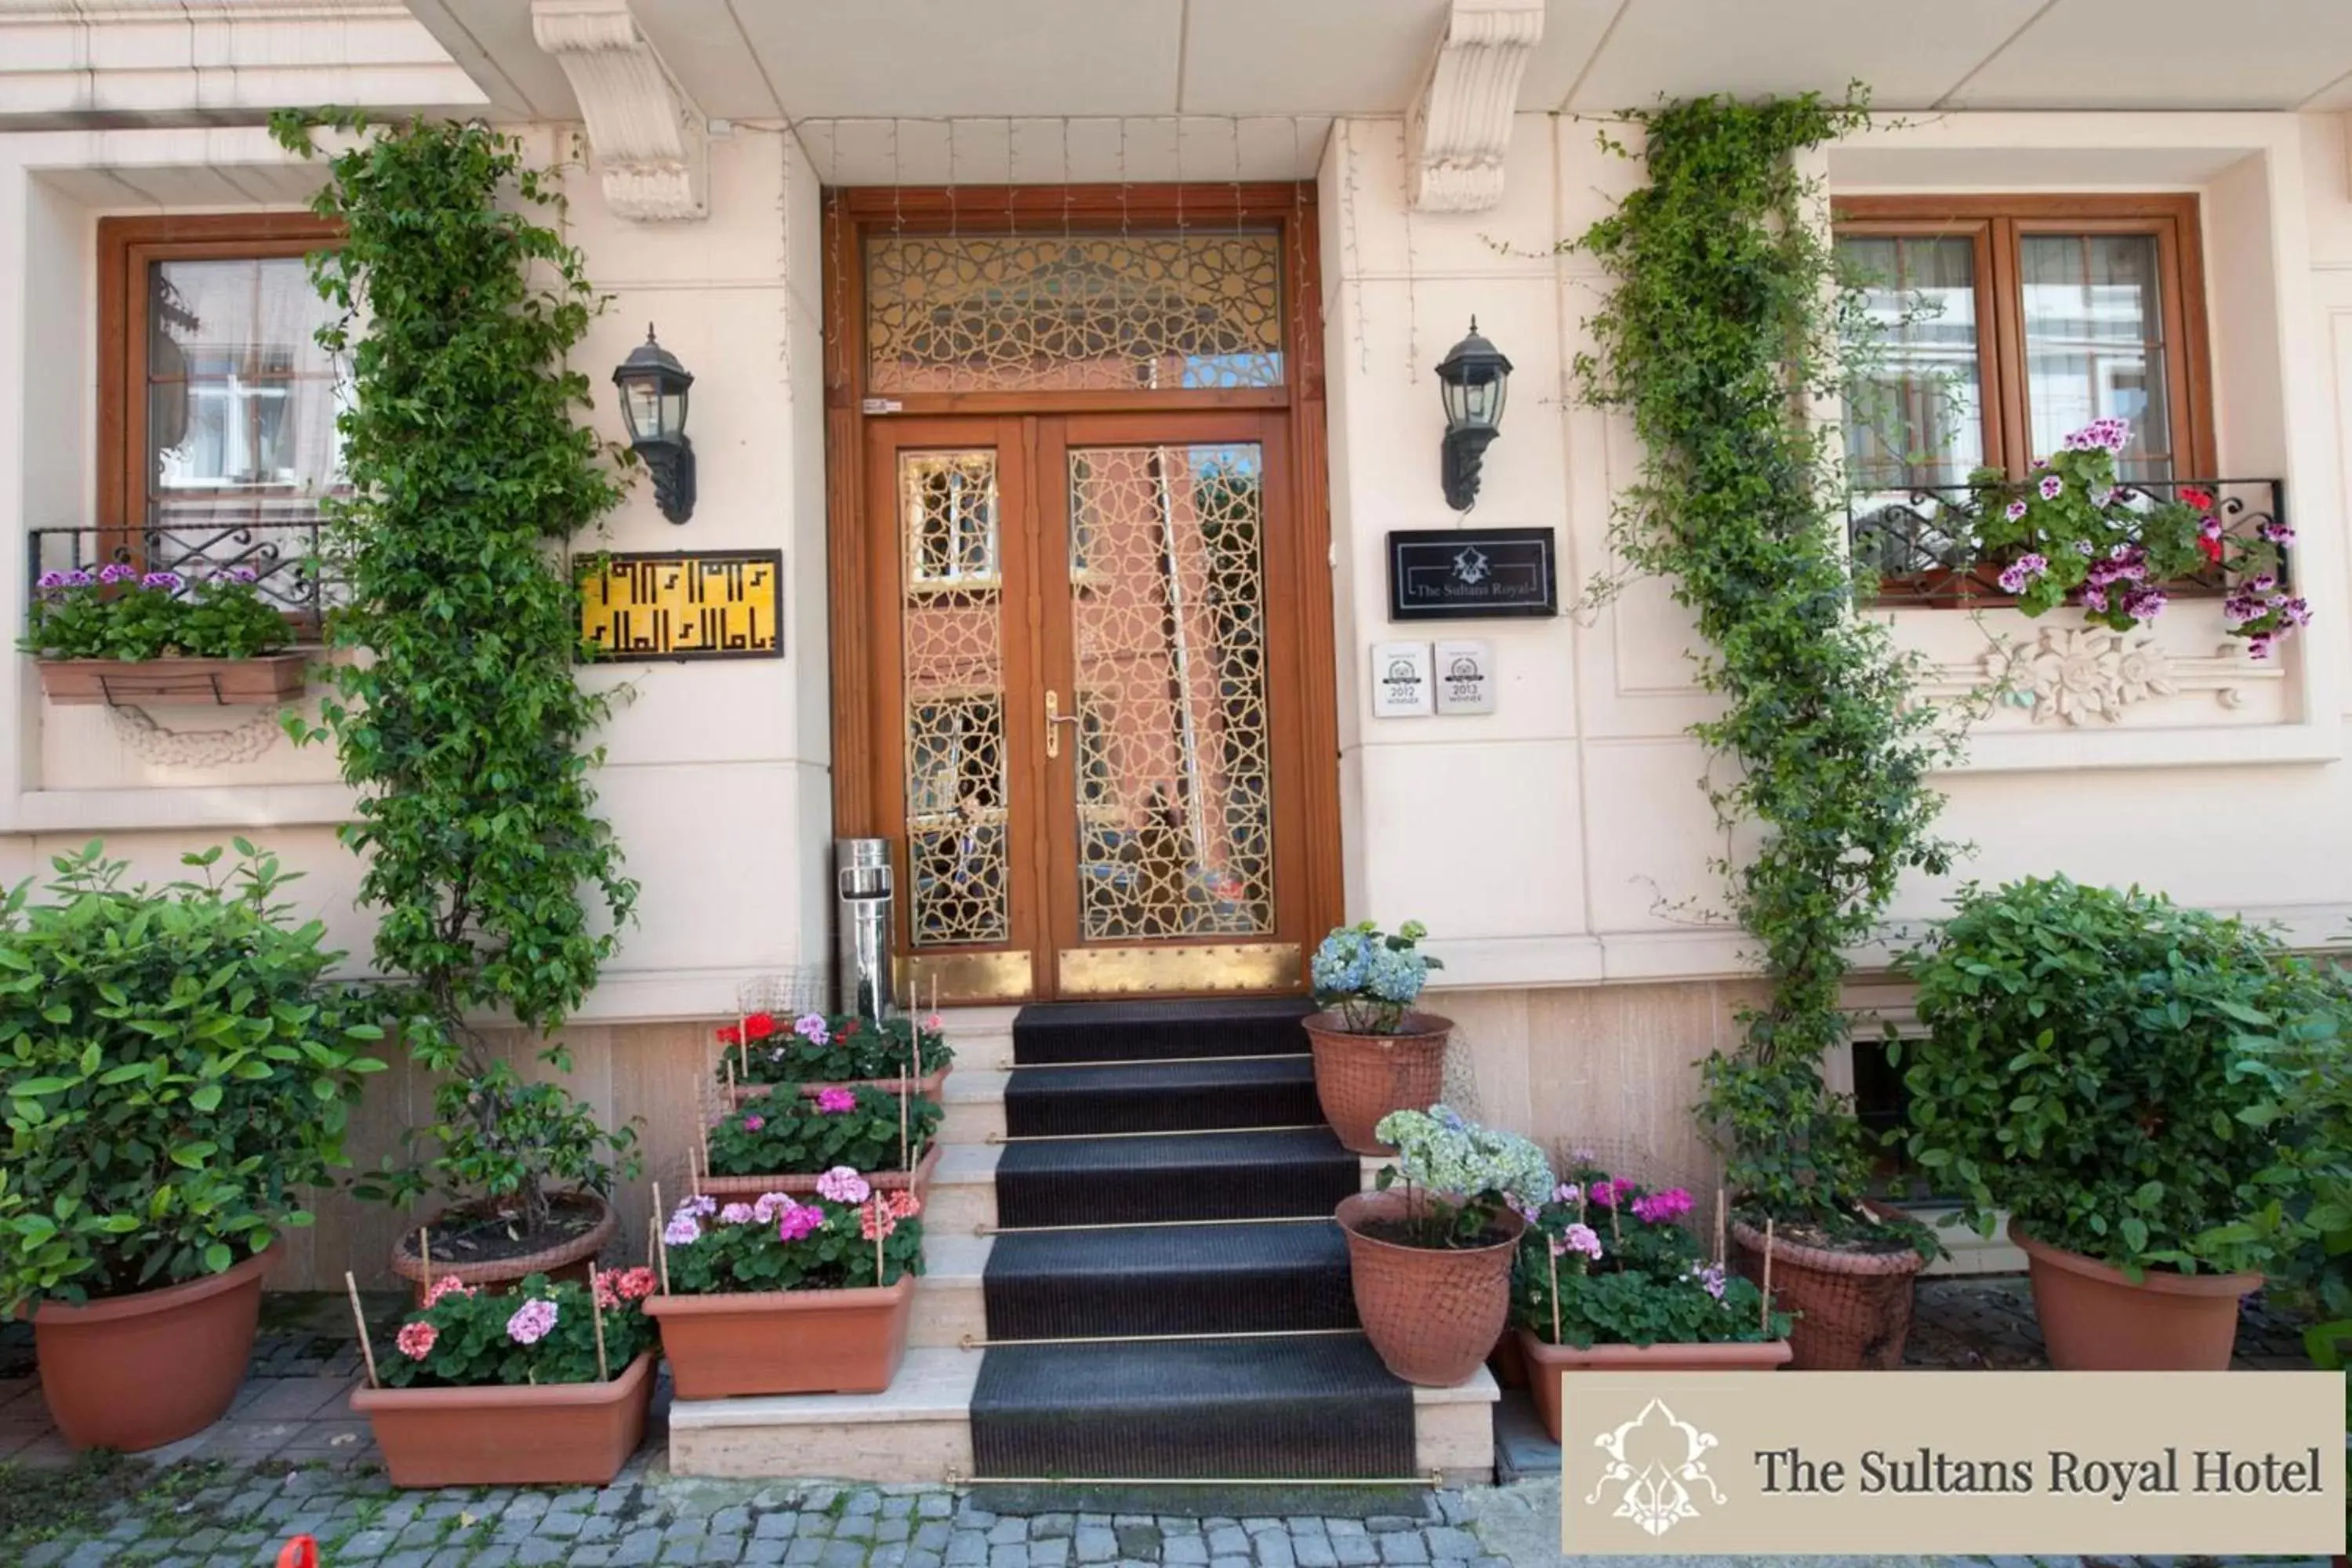 Facade/entrance in Sultans Royal Hotel